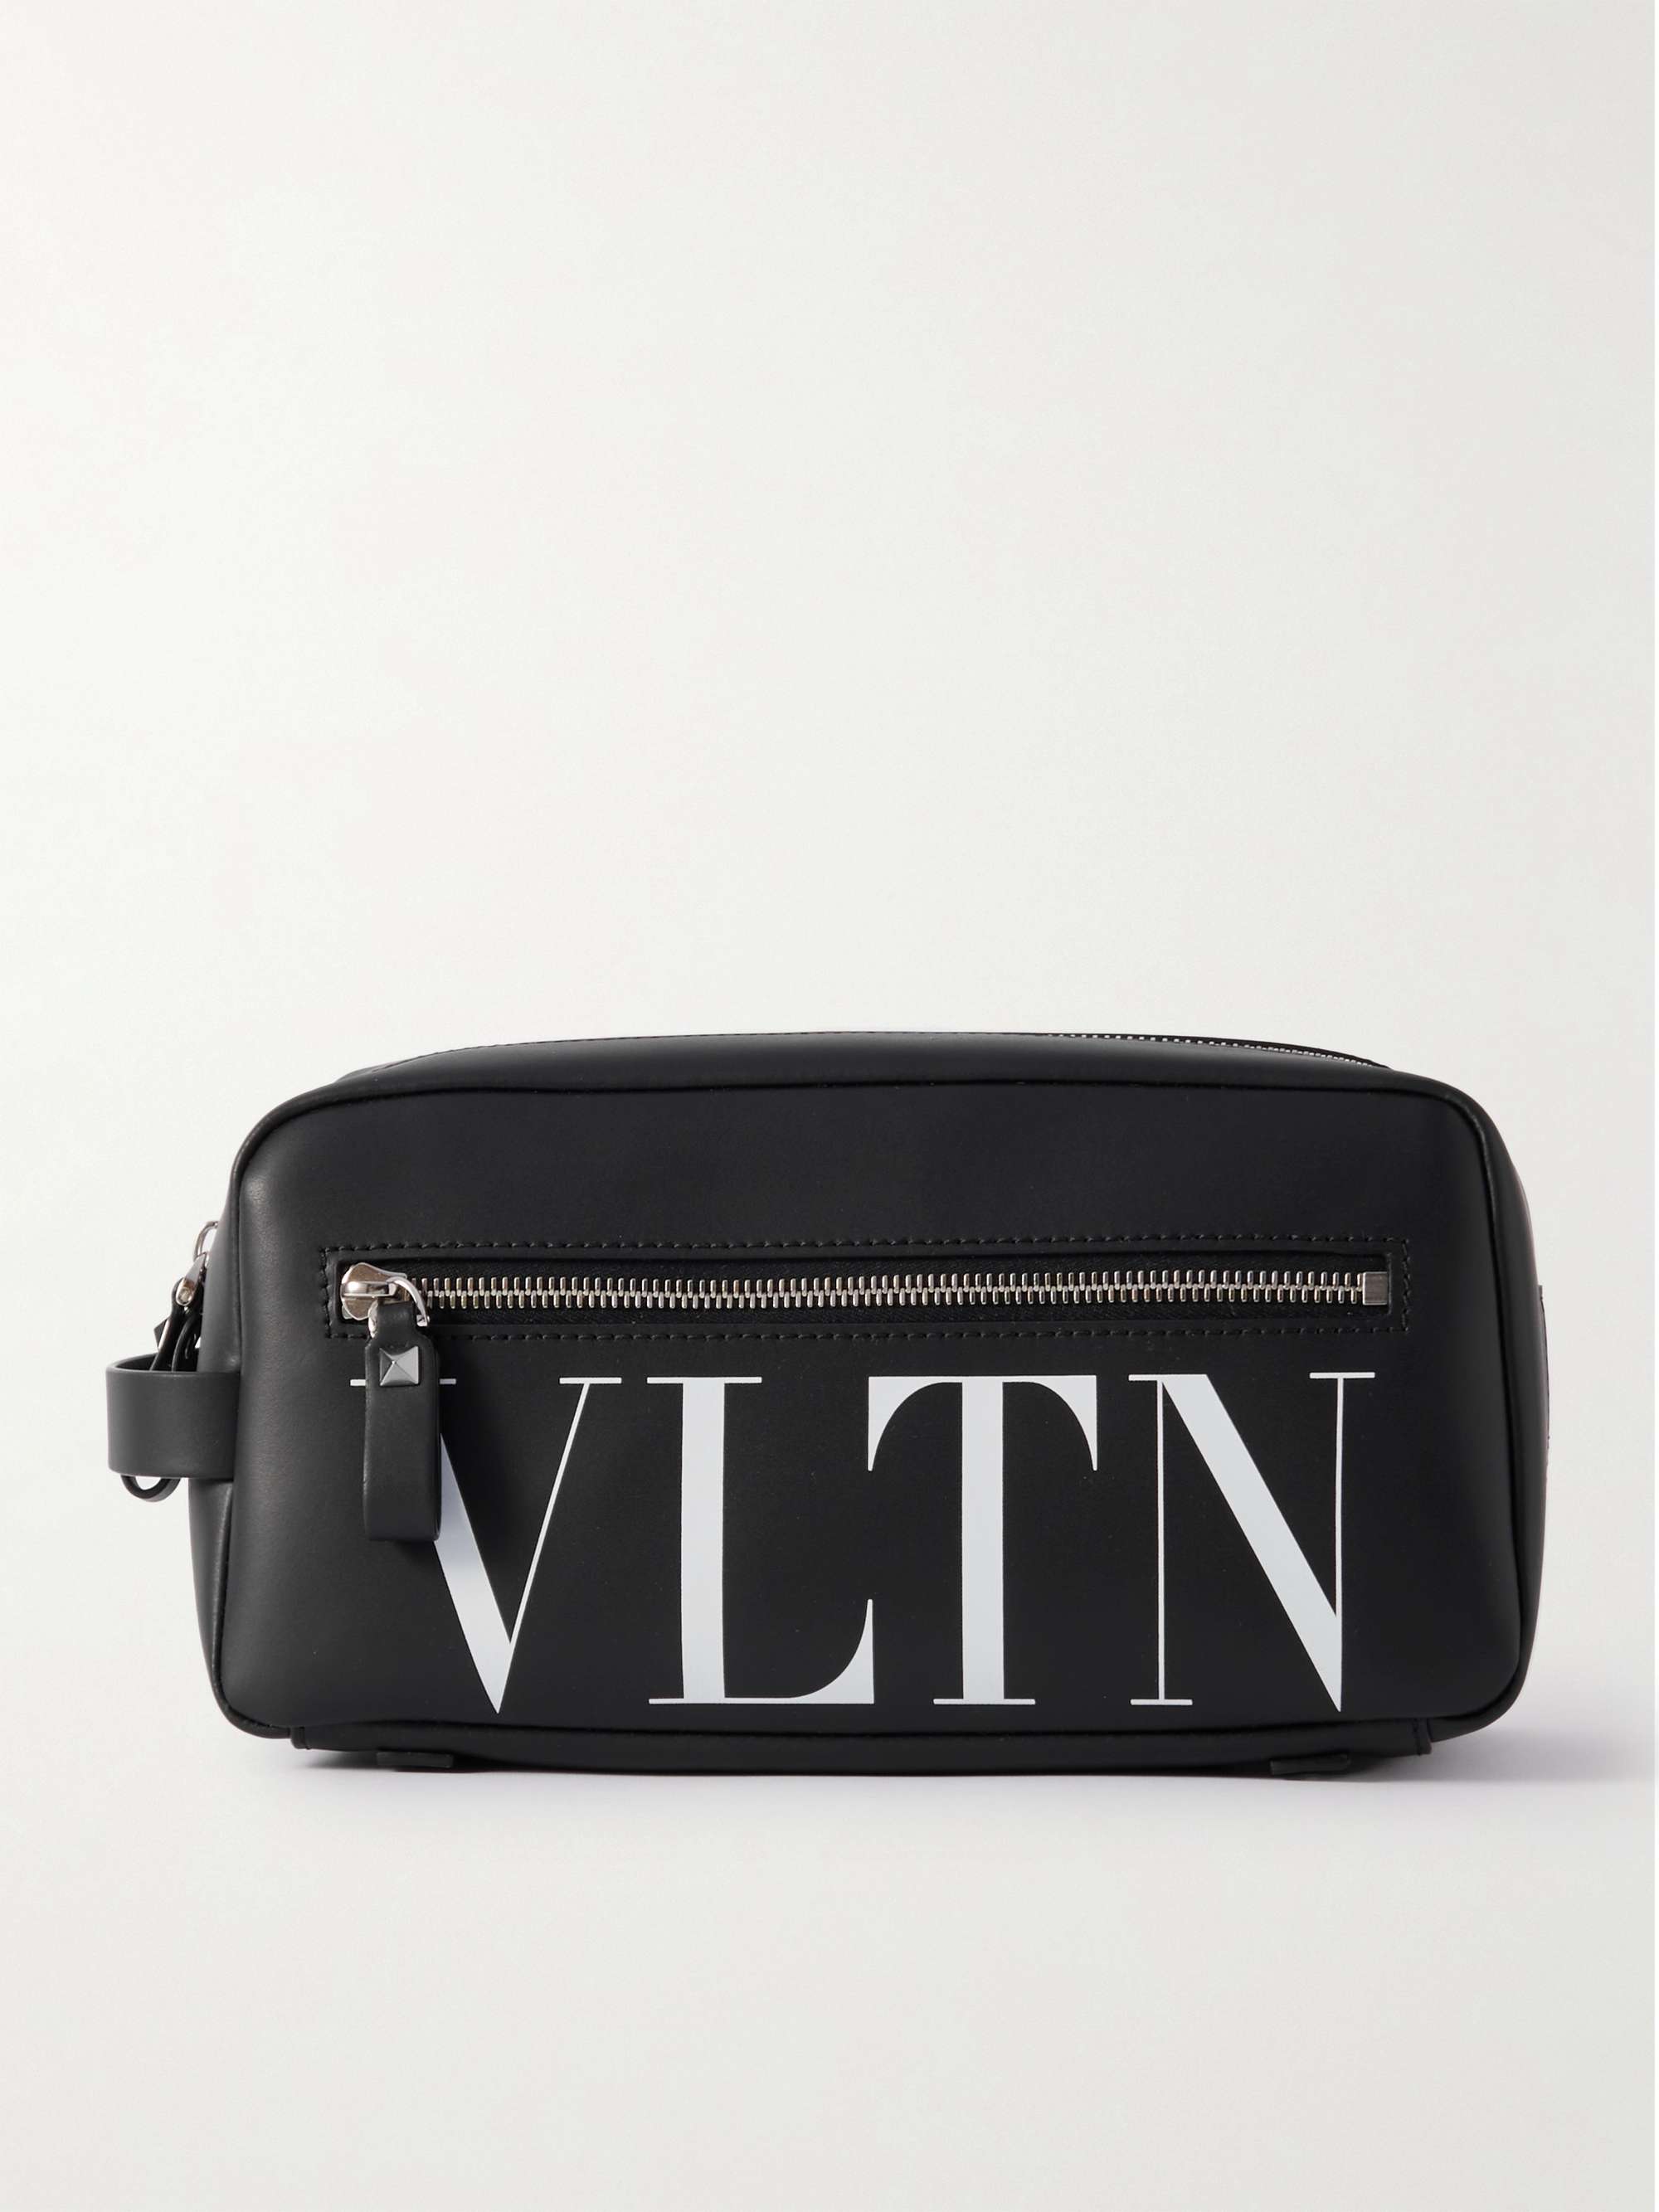 Valentino Garavani VLTN Print Backpack - Black for Men